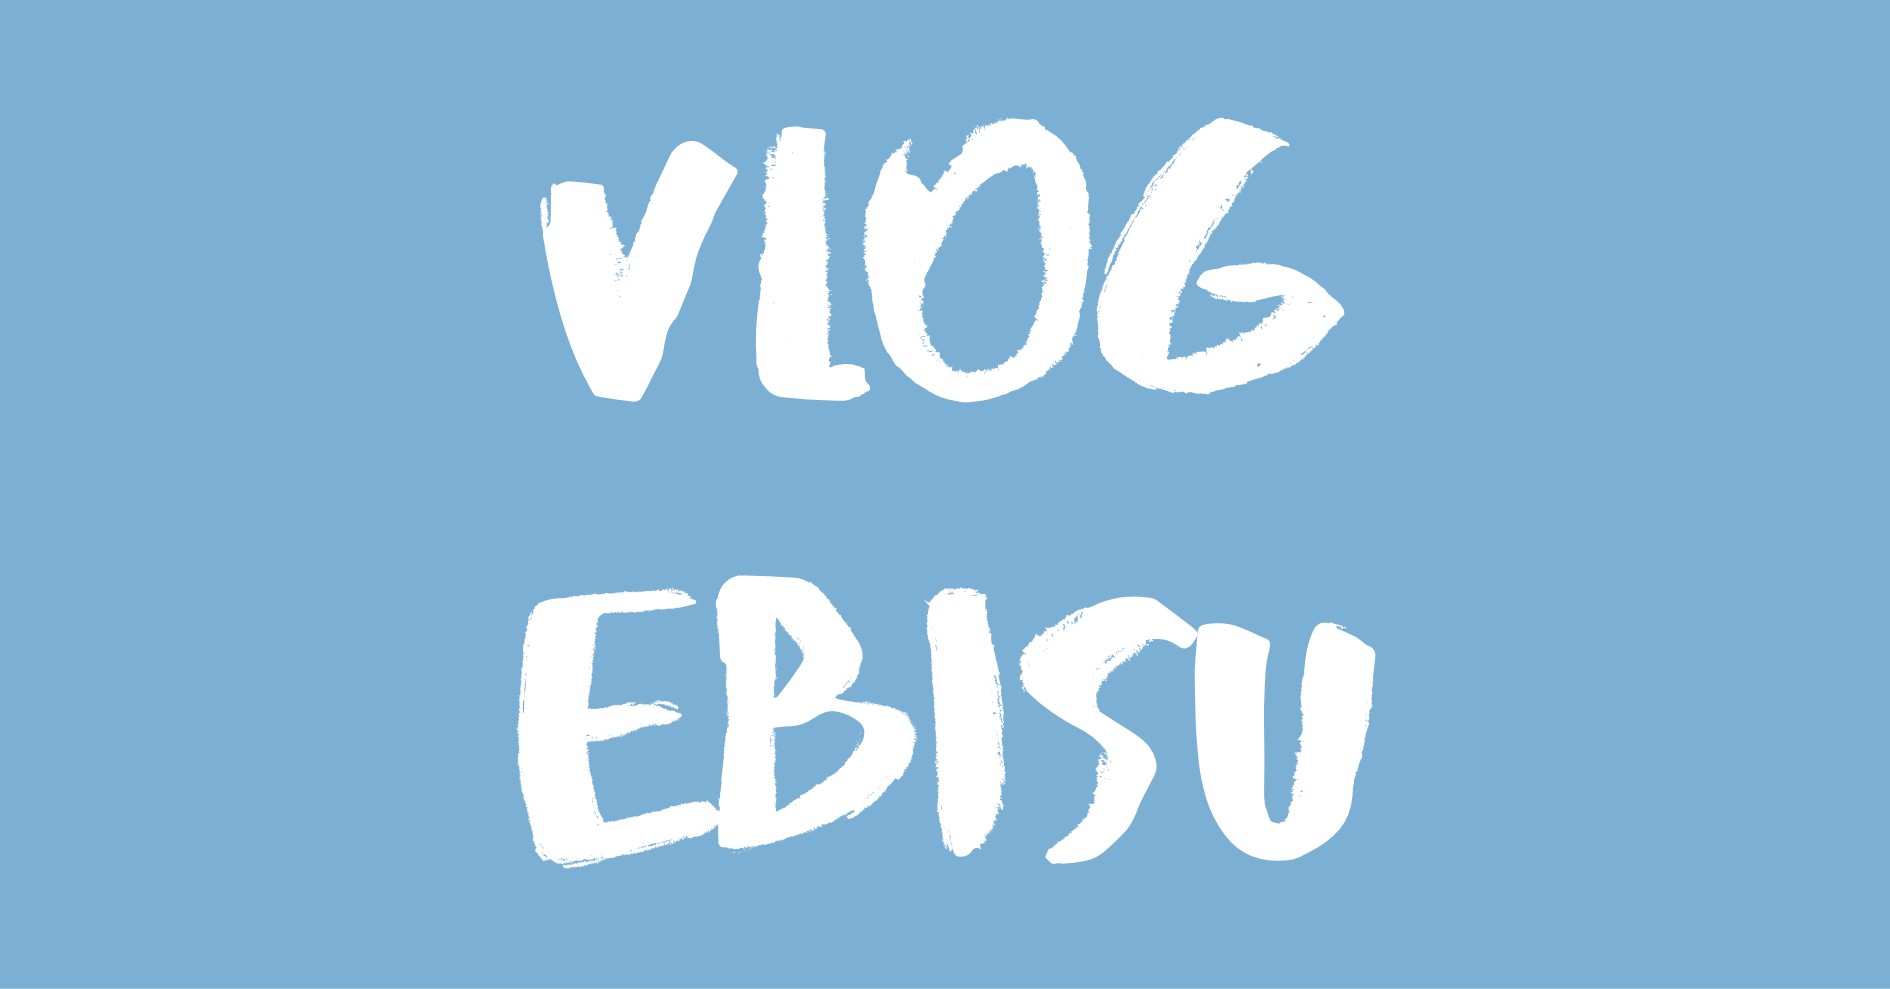 Vlog Ebisu